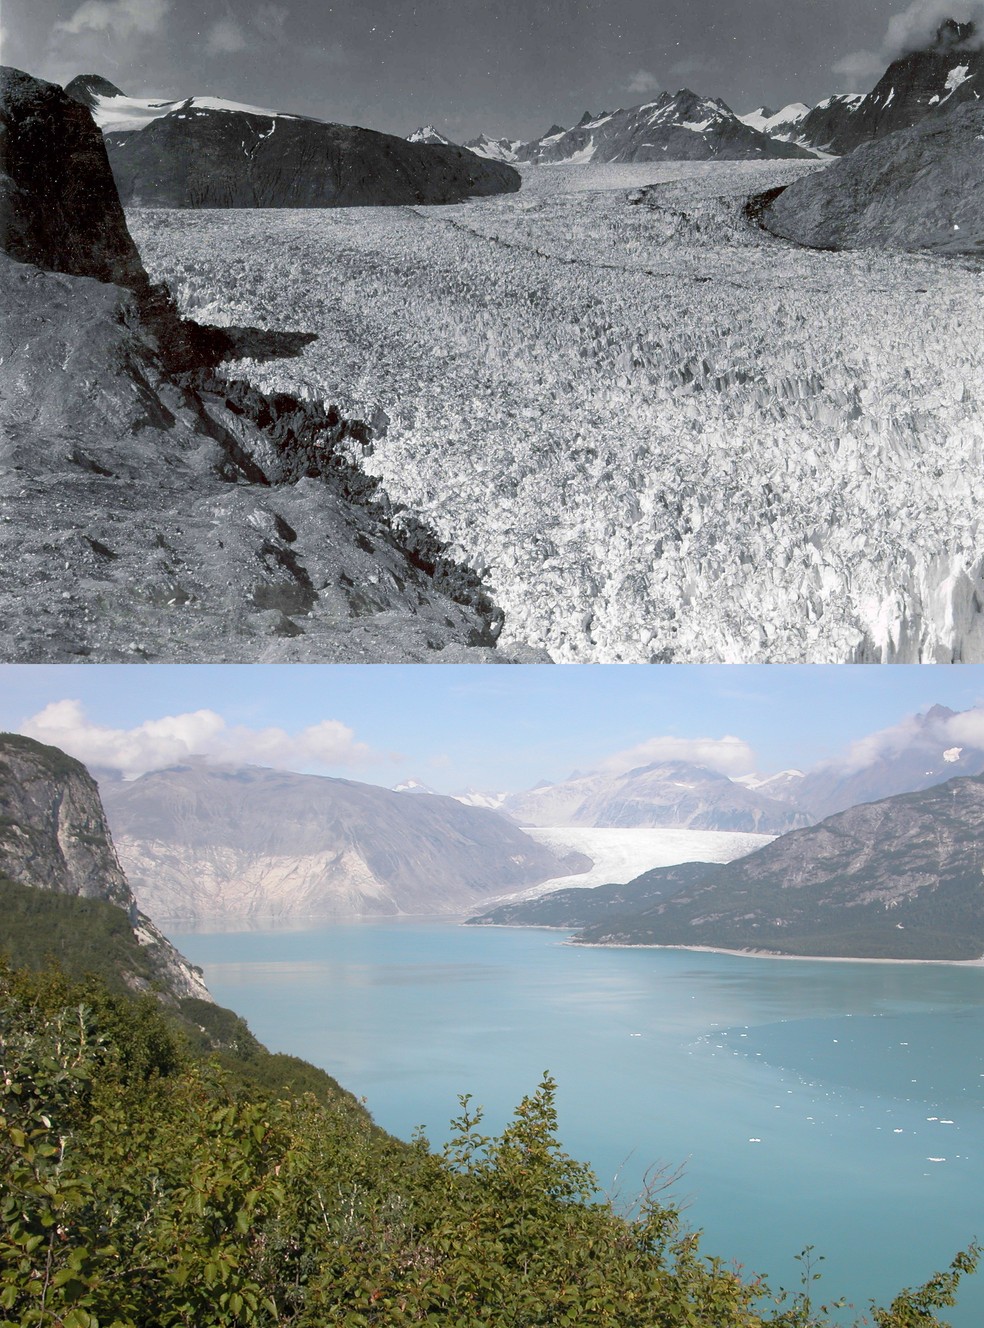 Derretimento da geleira Muir, no Alasca — Foto: NASA